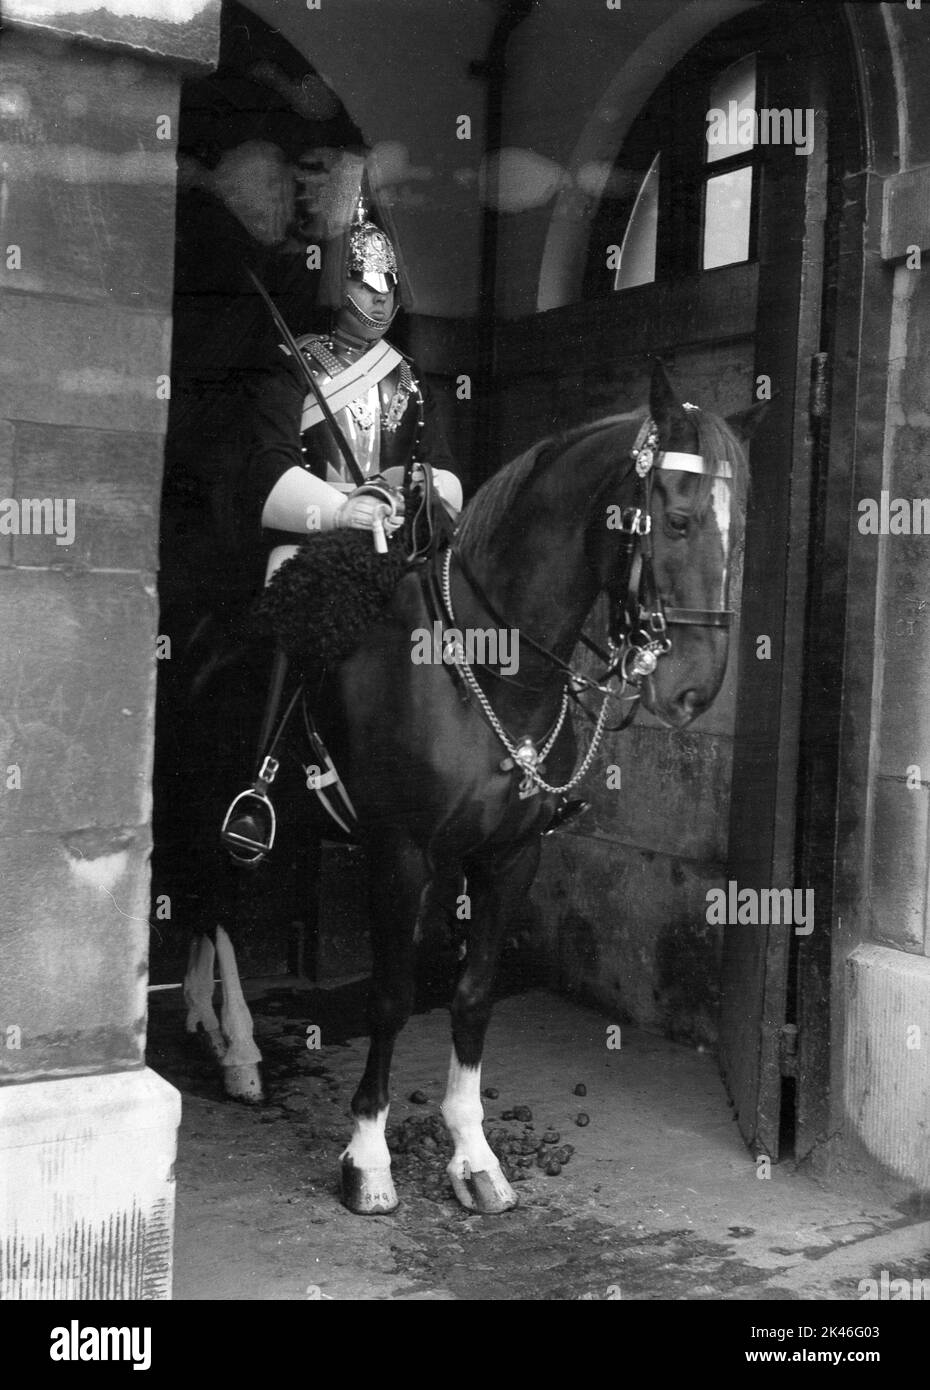 1958, storico, un King's Life Guard a cavallo, in servizio di sentinella alle Horse Guards, ingresso ufficiale al Palazzo di Whitehall, Westminster, Londra, Inghilterra, Regno Unito. Il guardiano montato indossa uniforme completa, tunica e copricapo cerimoniale noto come elmetto Albert. Foto Stock